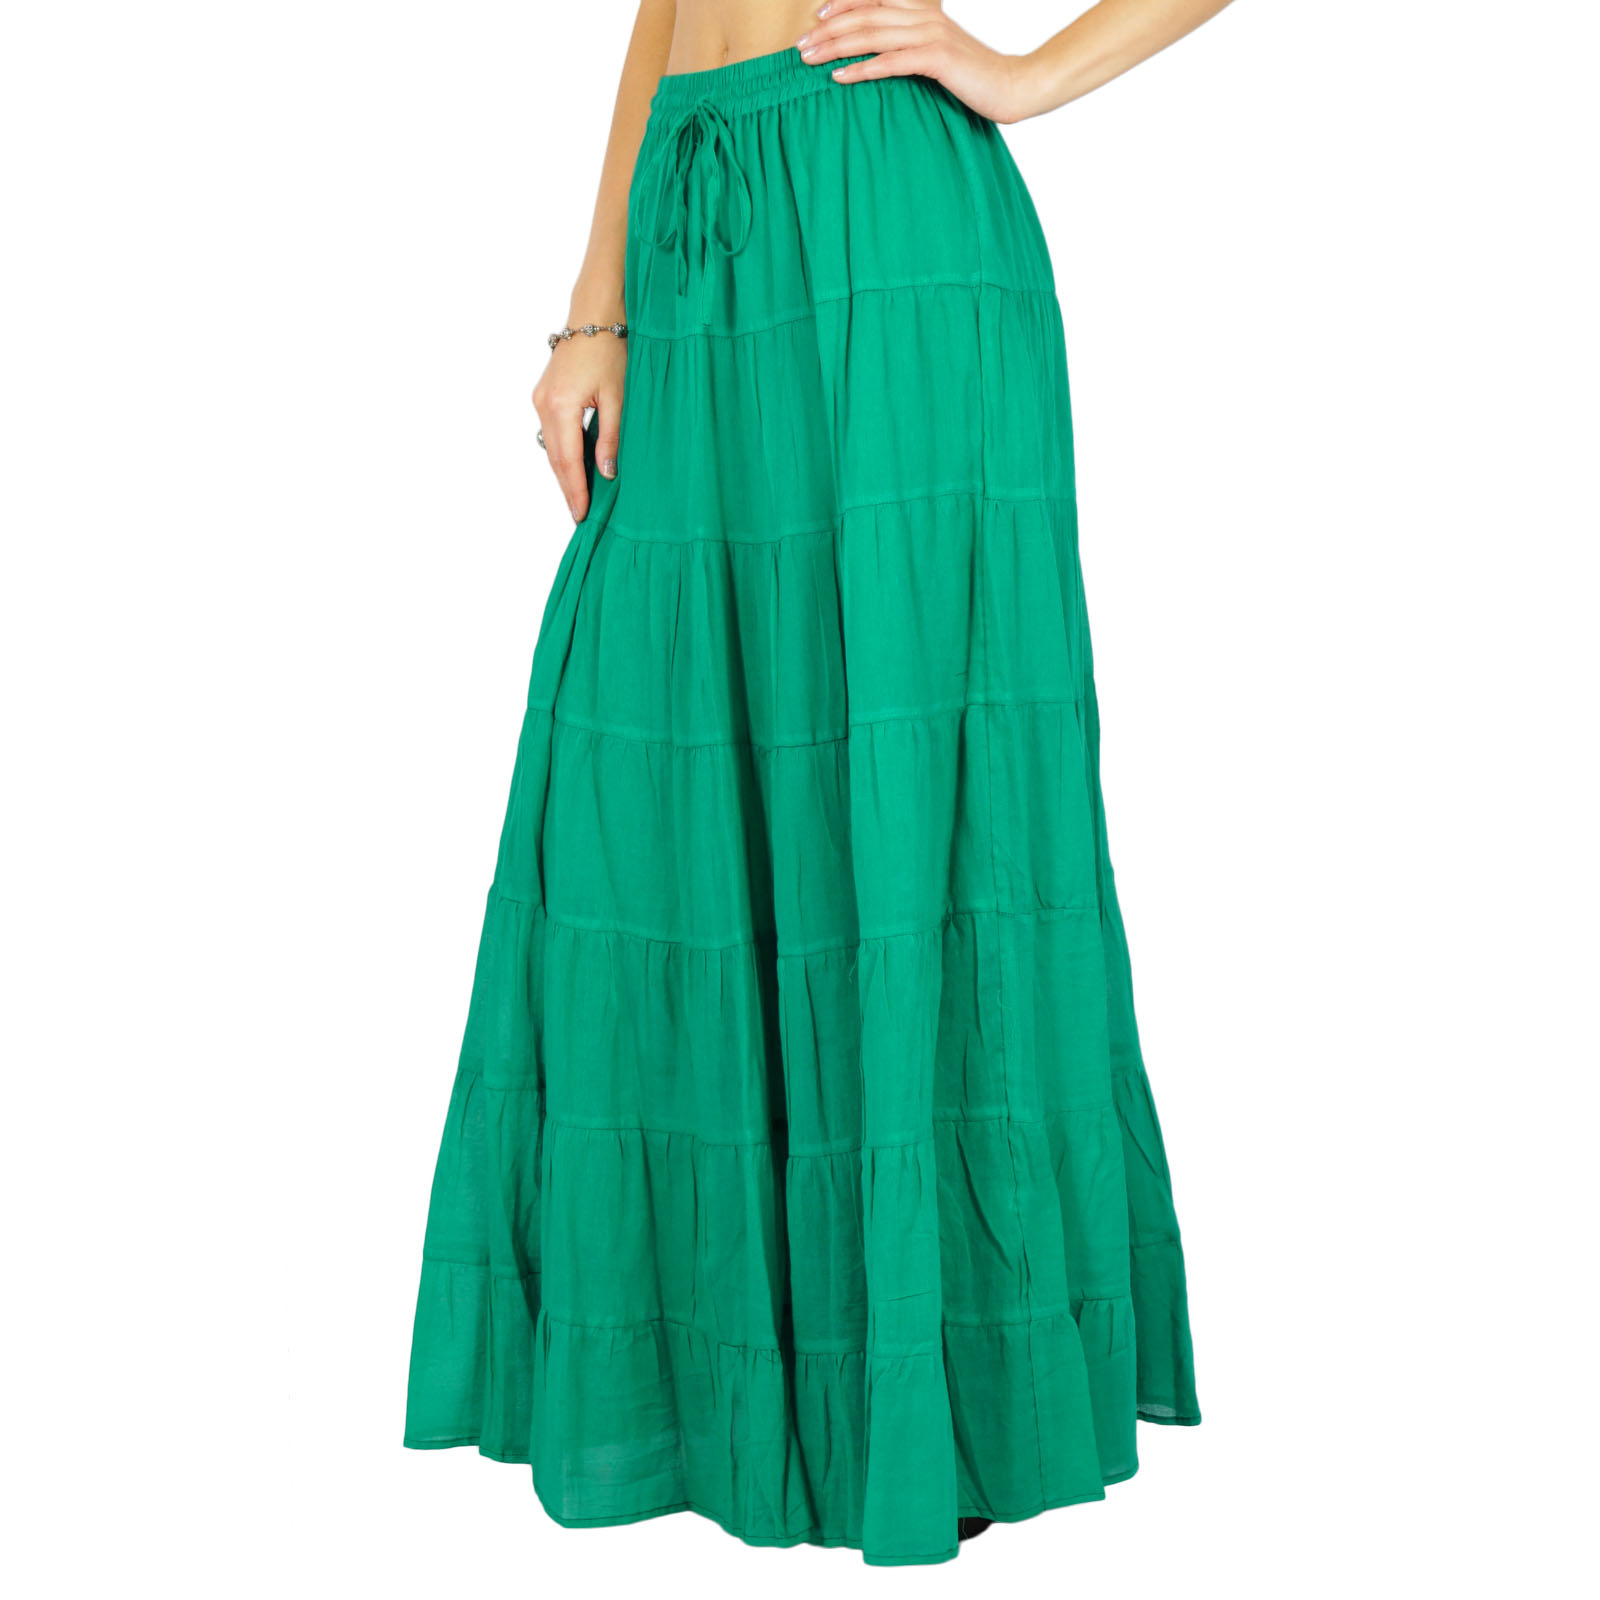 Skirt Long Maxi Skirt Beach Wear Cotton Summer Wear Clothing US-10|EX ...